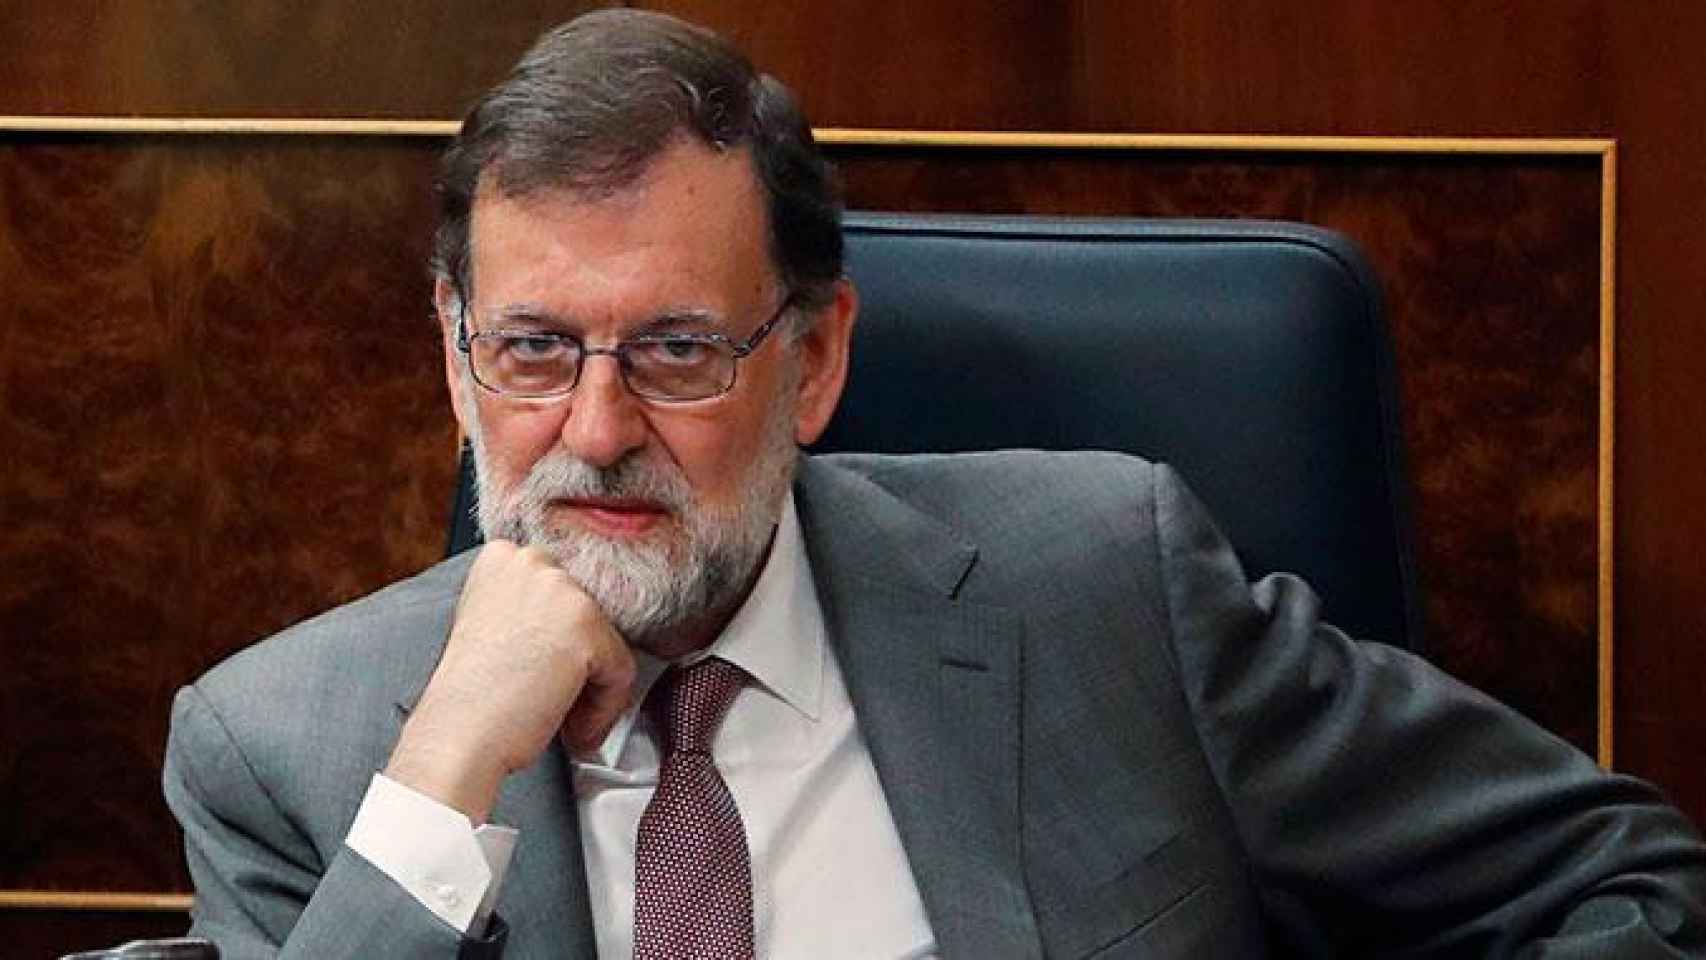 Mariano Rajoy, presidente del Gobierno, durante la sesión de control al Gobierno previa al debate sobre la moción de censura del jueves y viernes / EFE